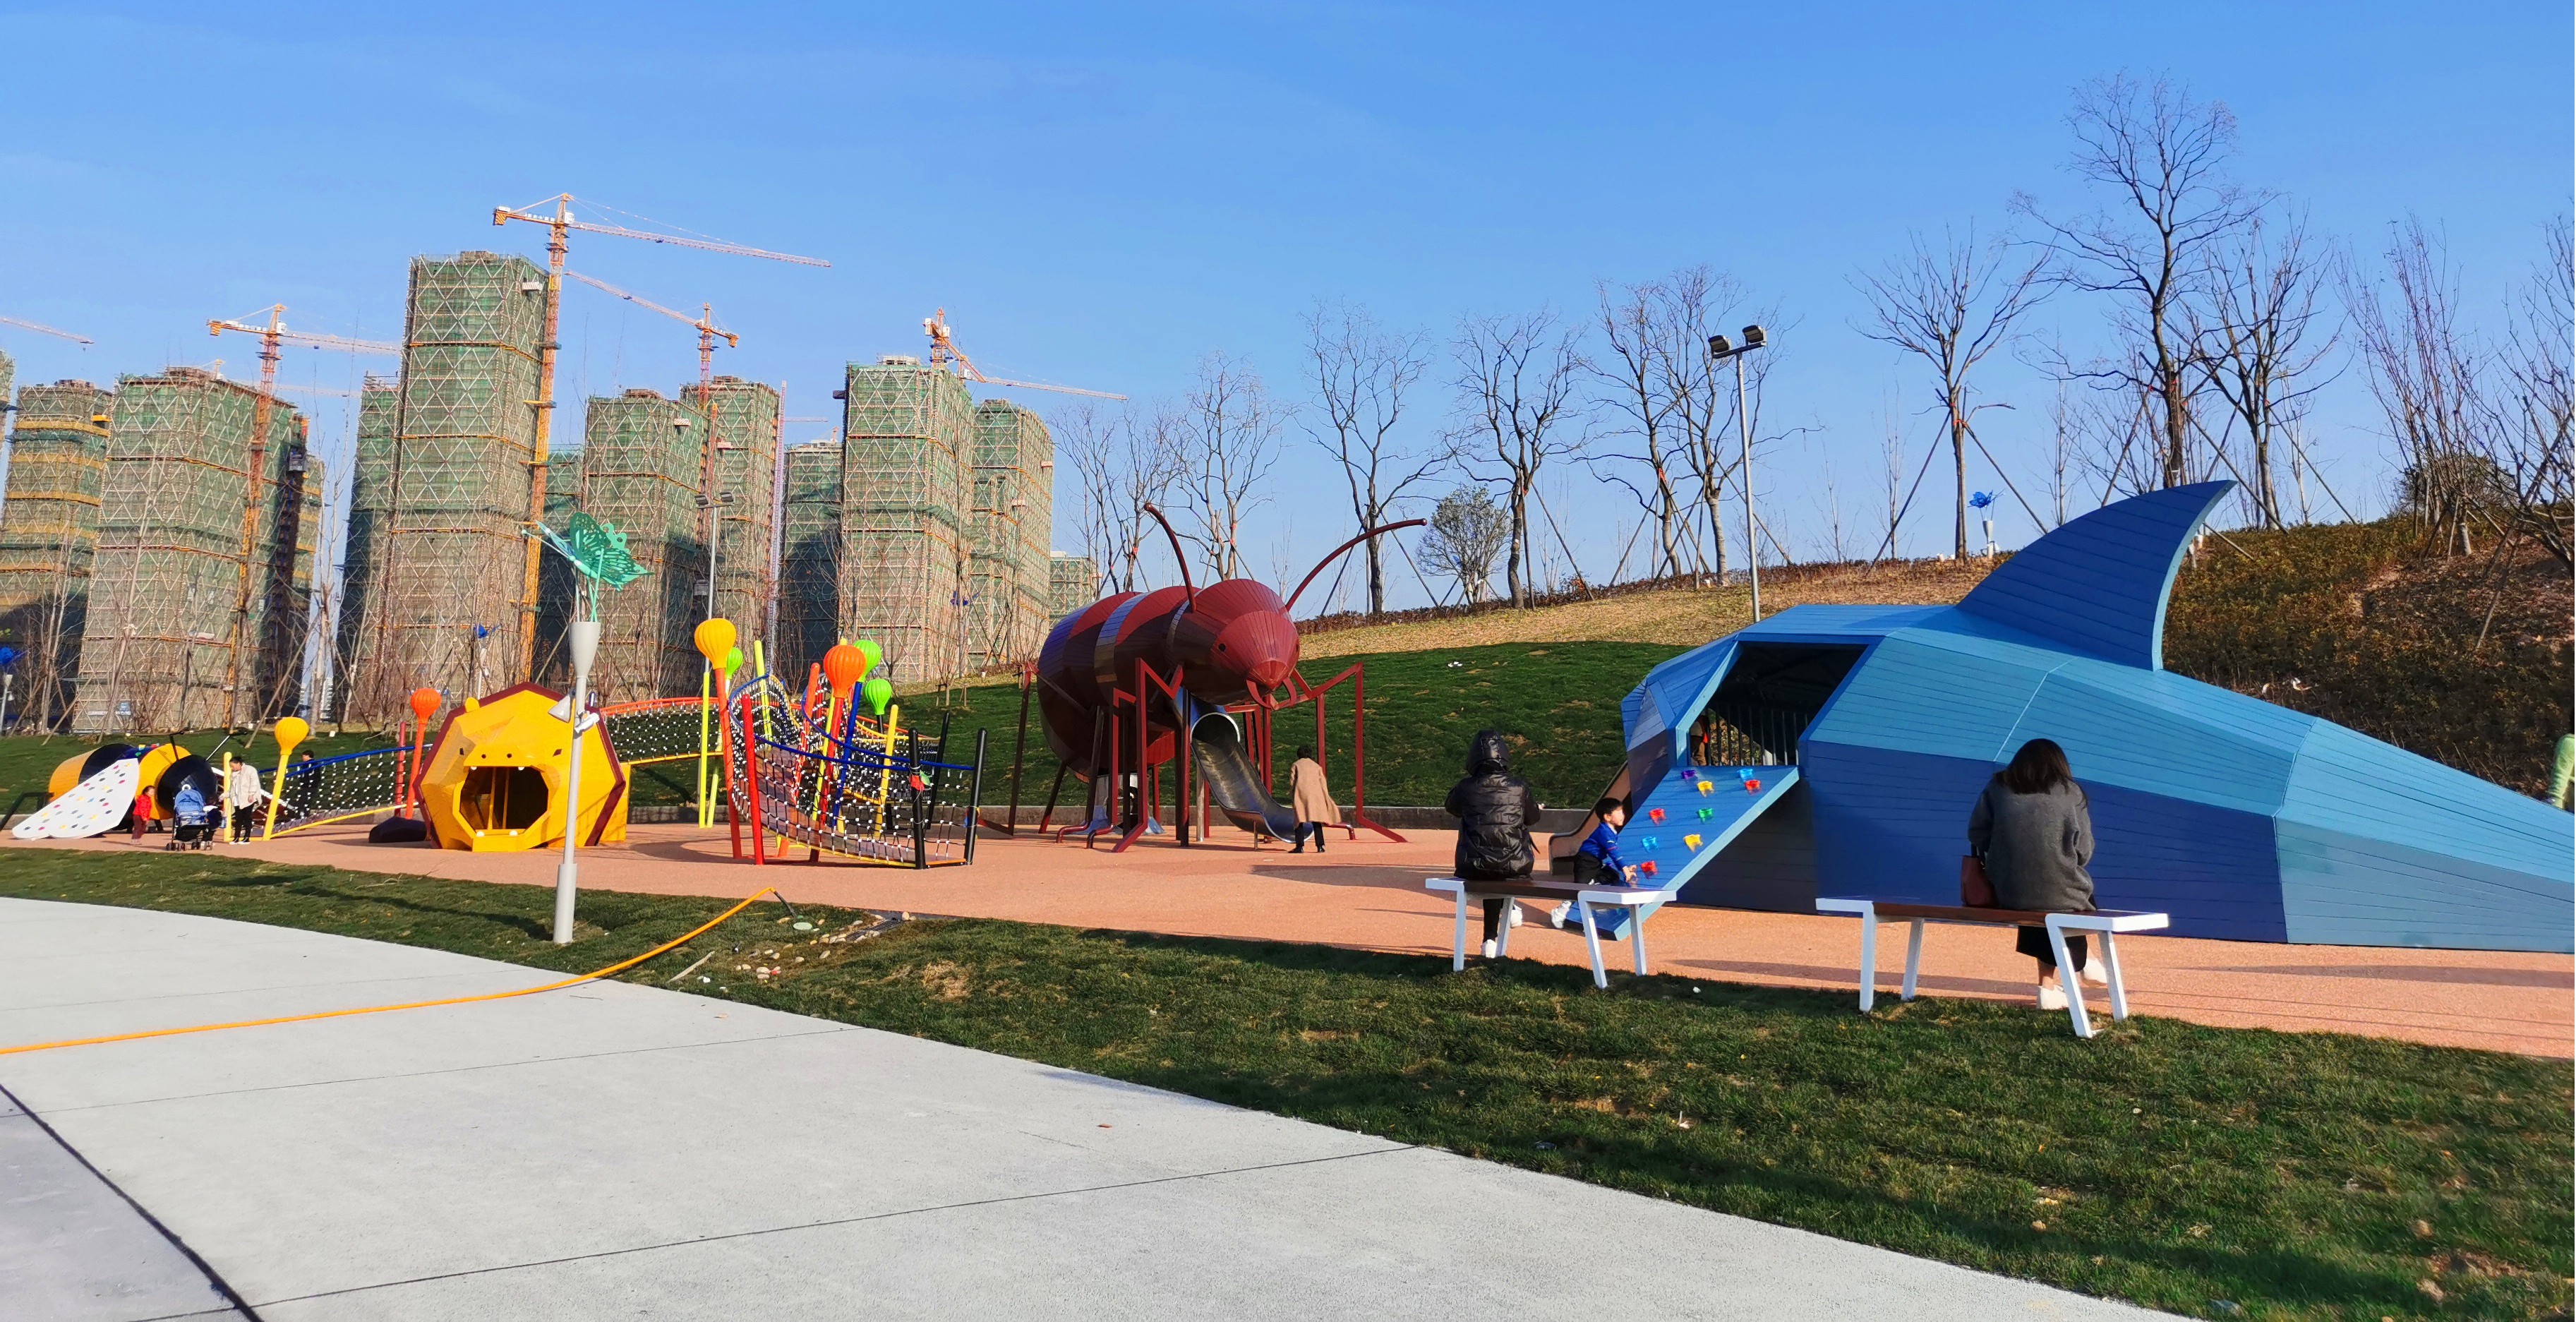 在儿童主题公园中华东游乐主要参与的是儿童游乐区和休闲区域的建设